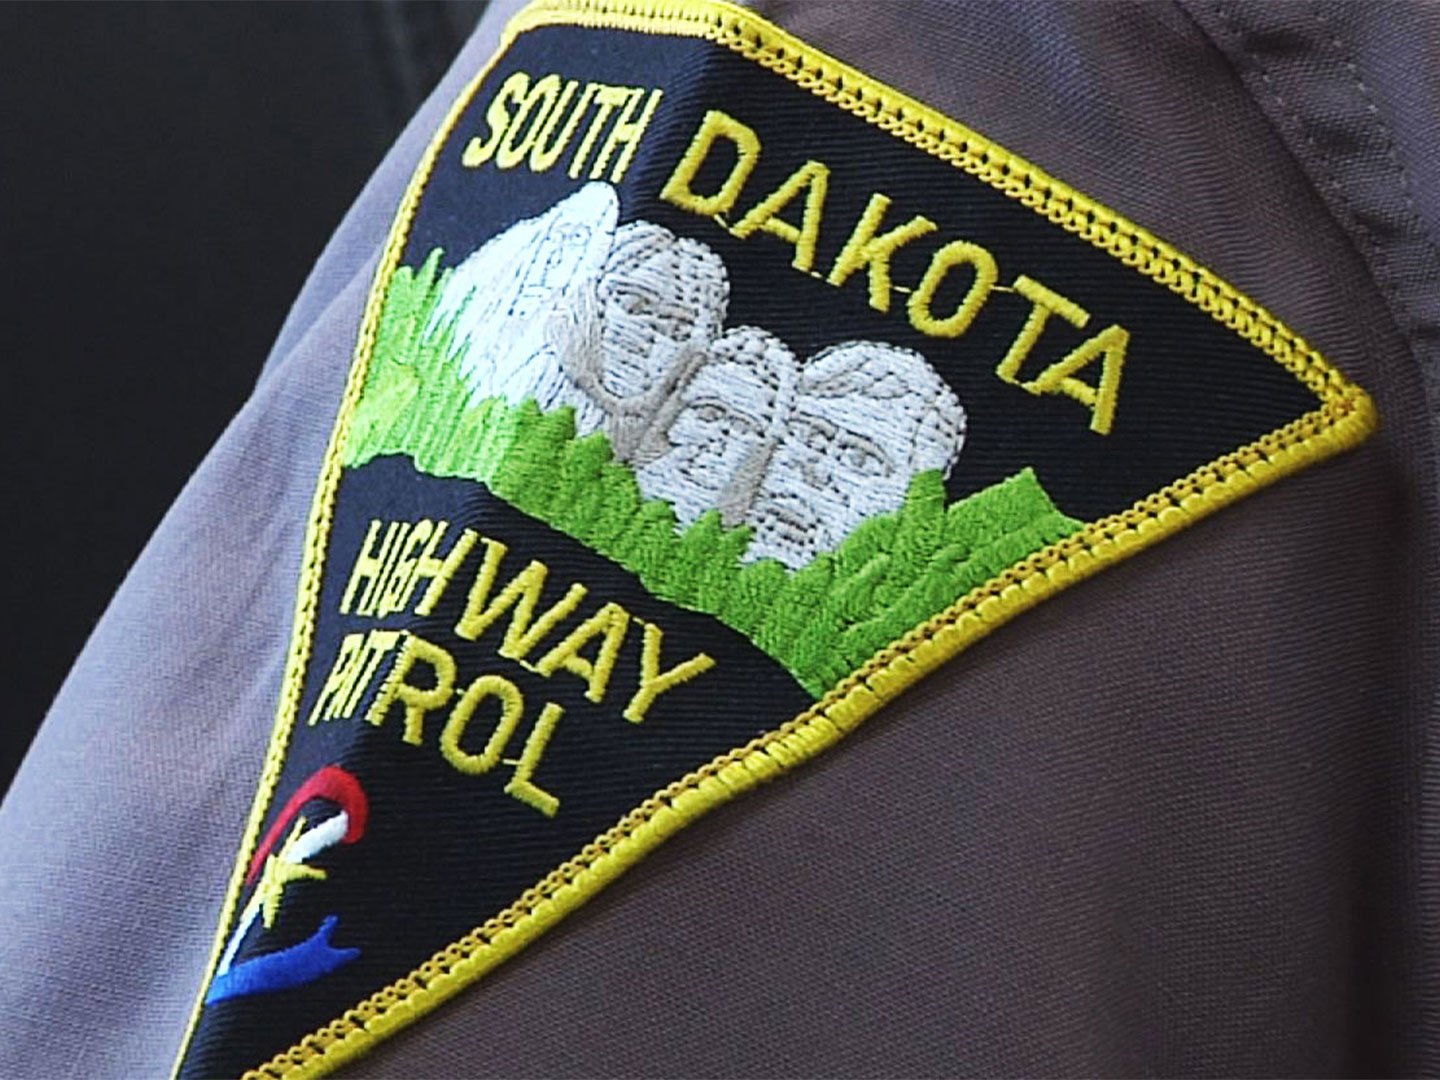 KELO South Dakota Highway Patrol trooper